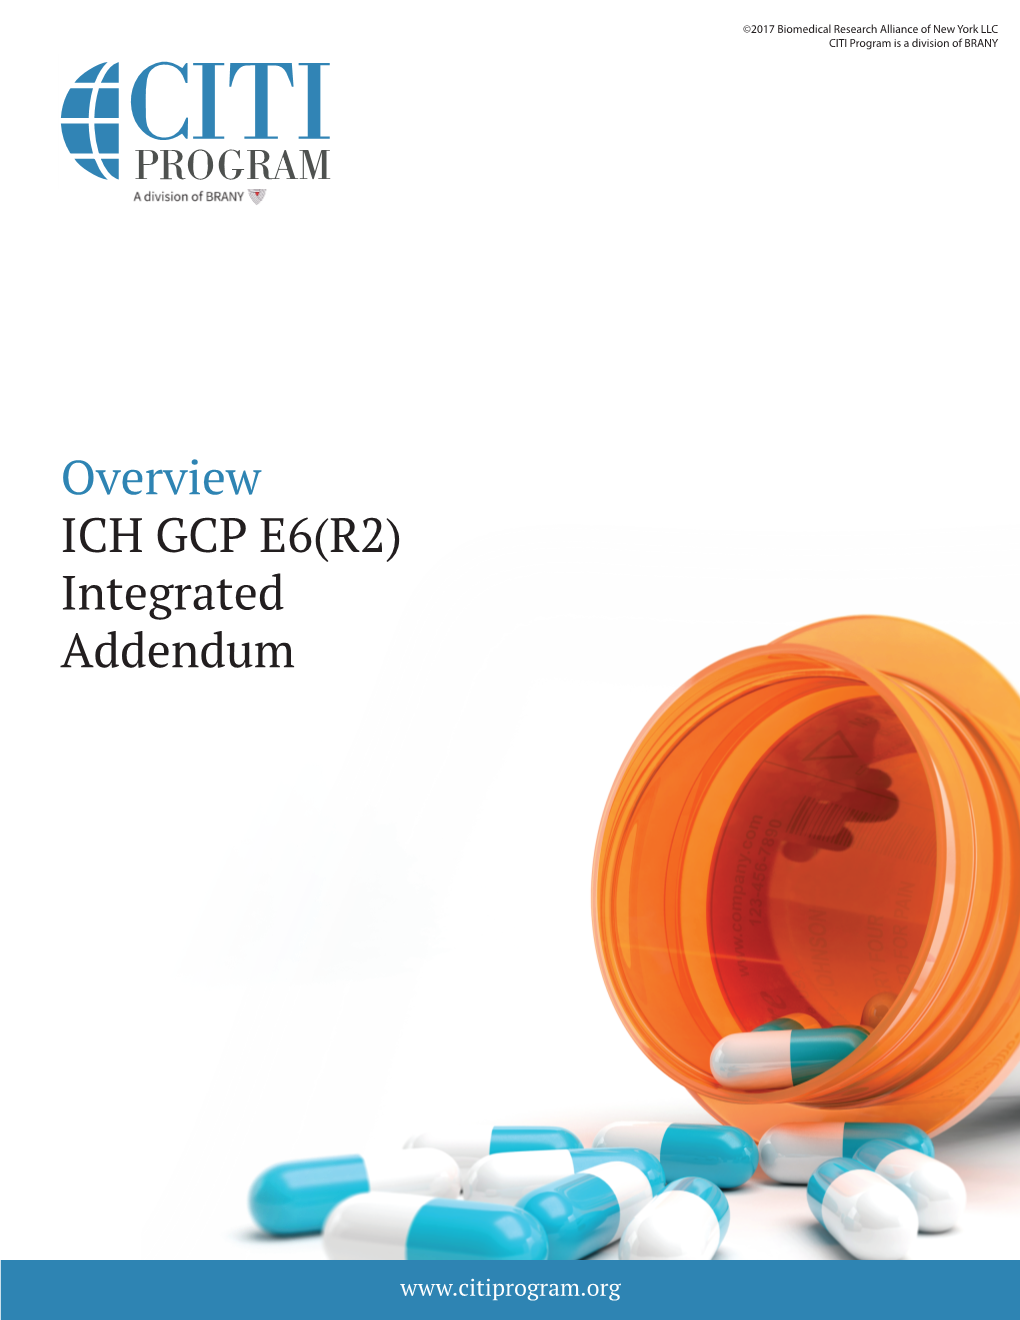 Overview ICH GCP E6(R2) Integrated Addendum